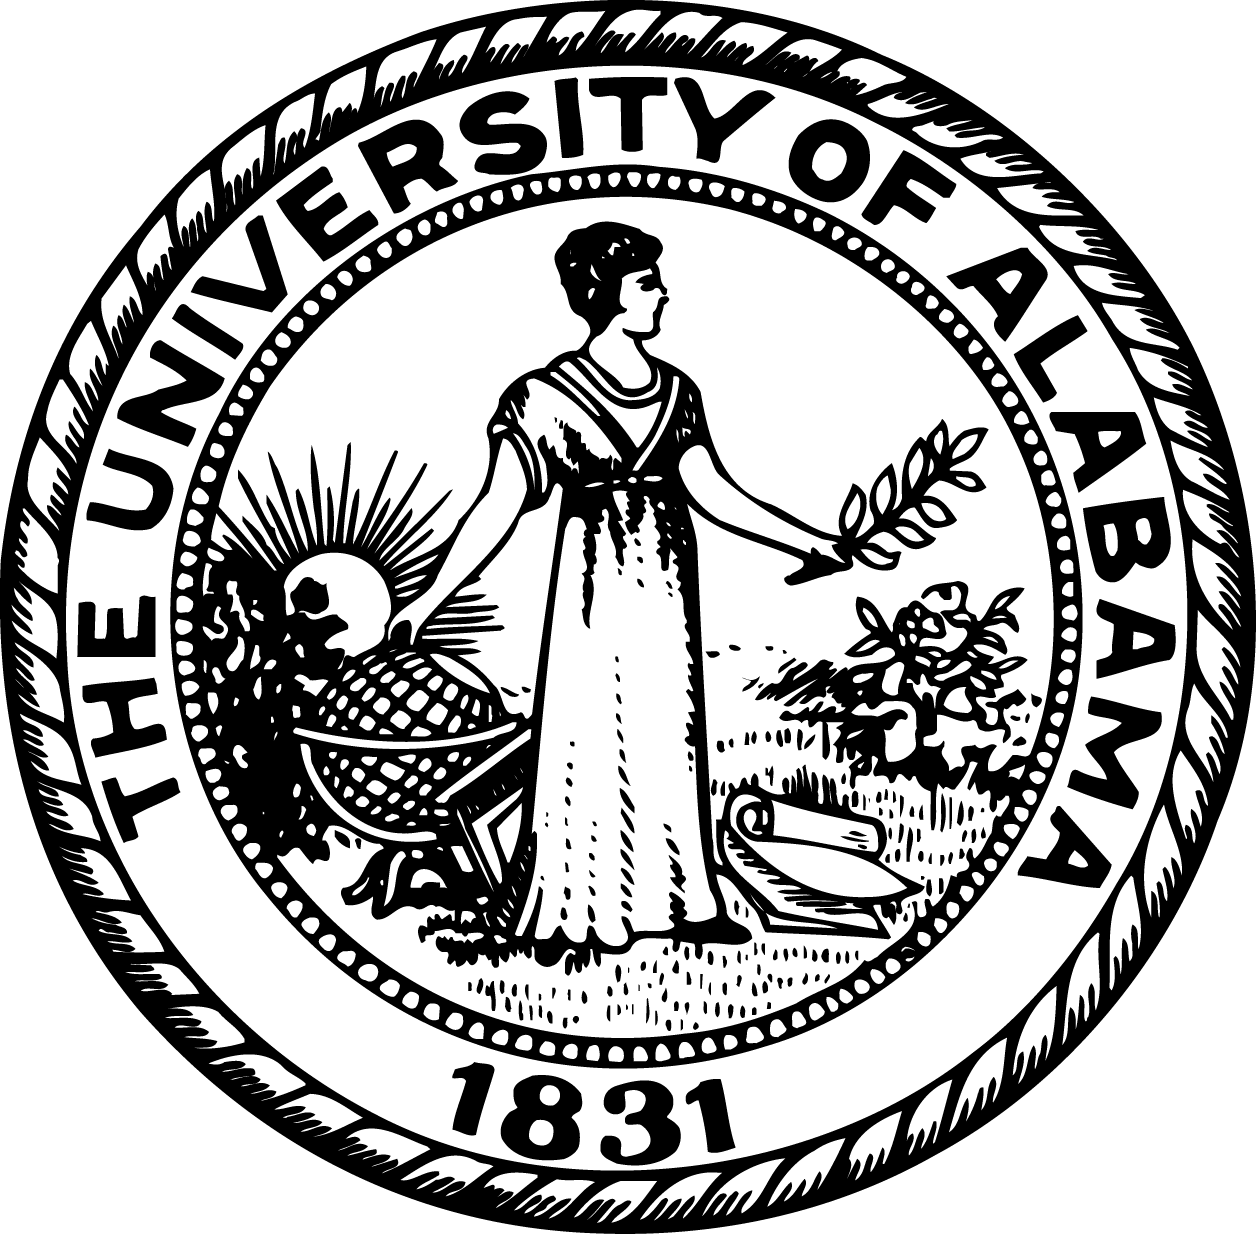 UA Logo [University of Alabama   ua.edu] png